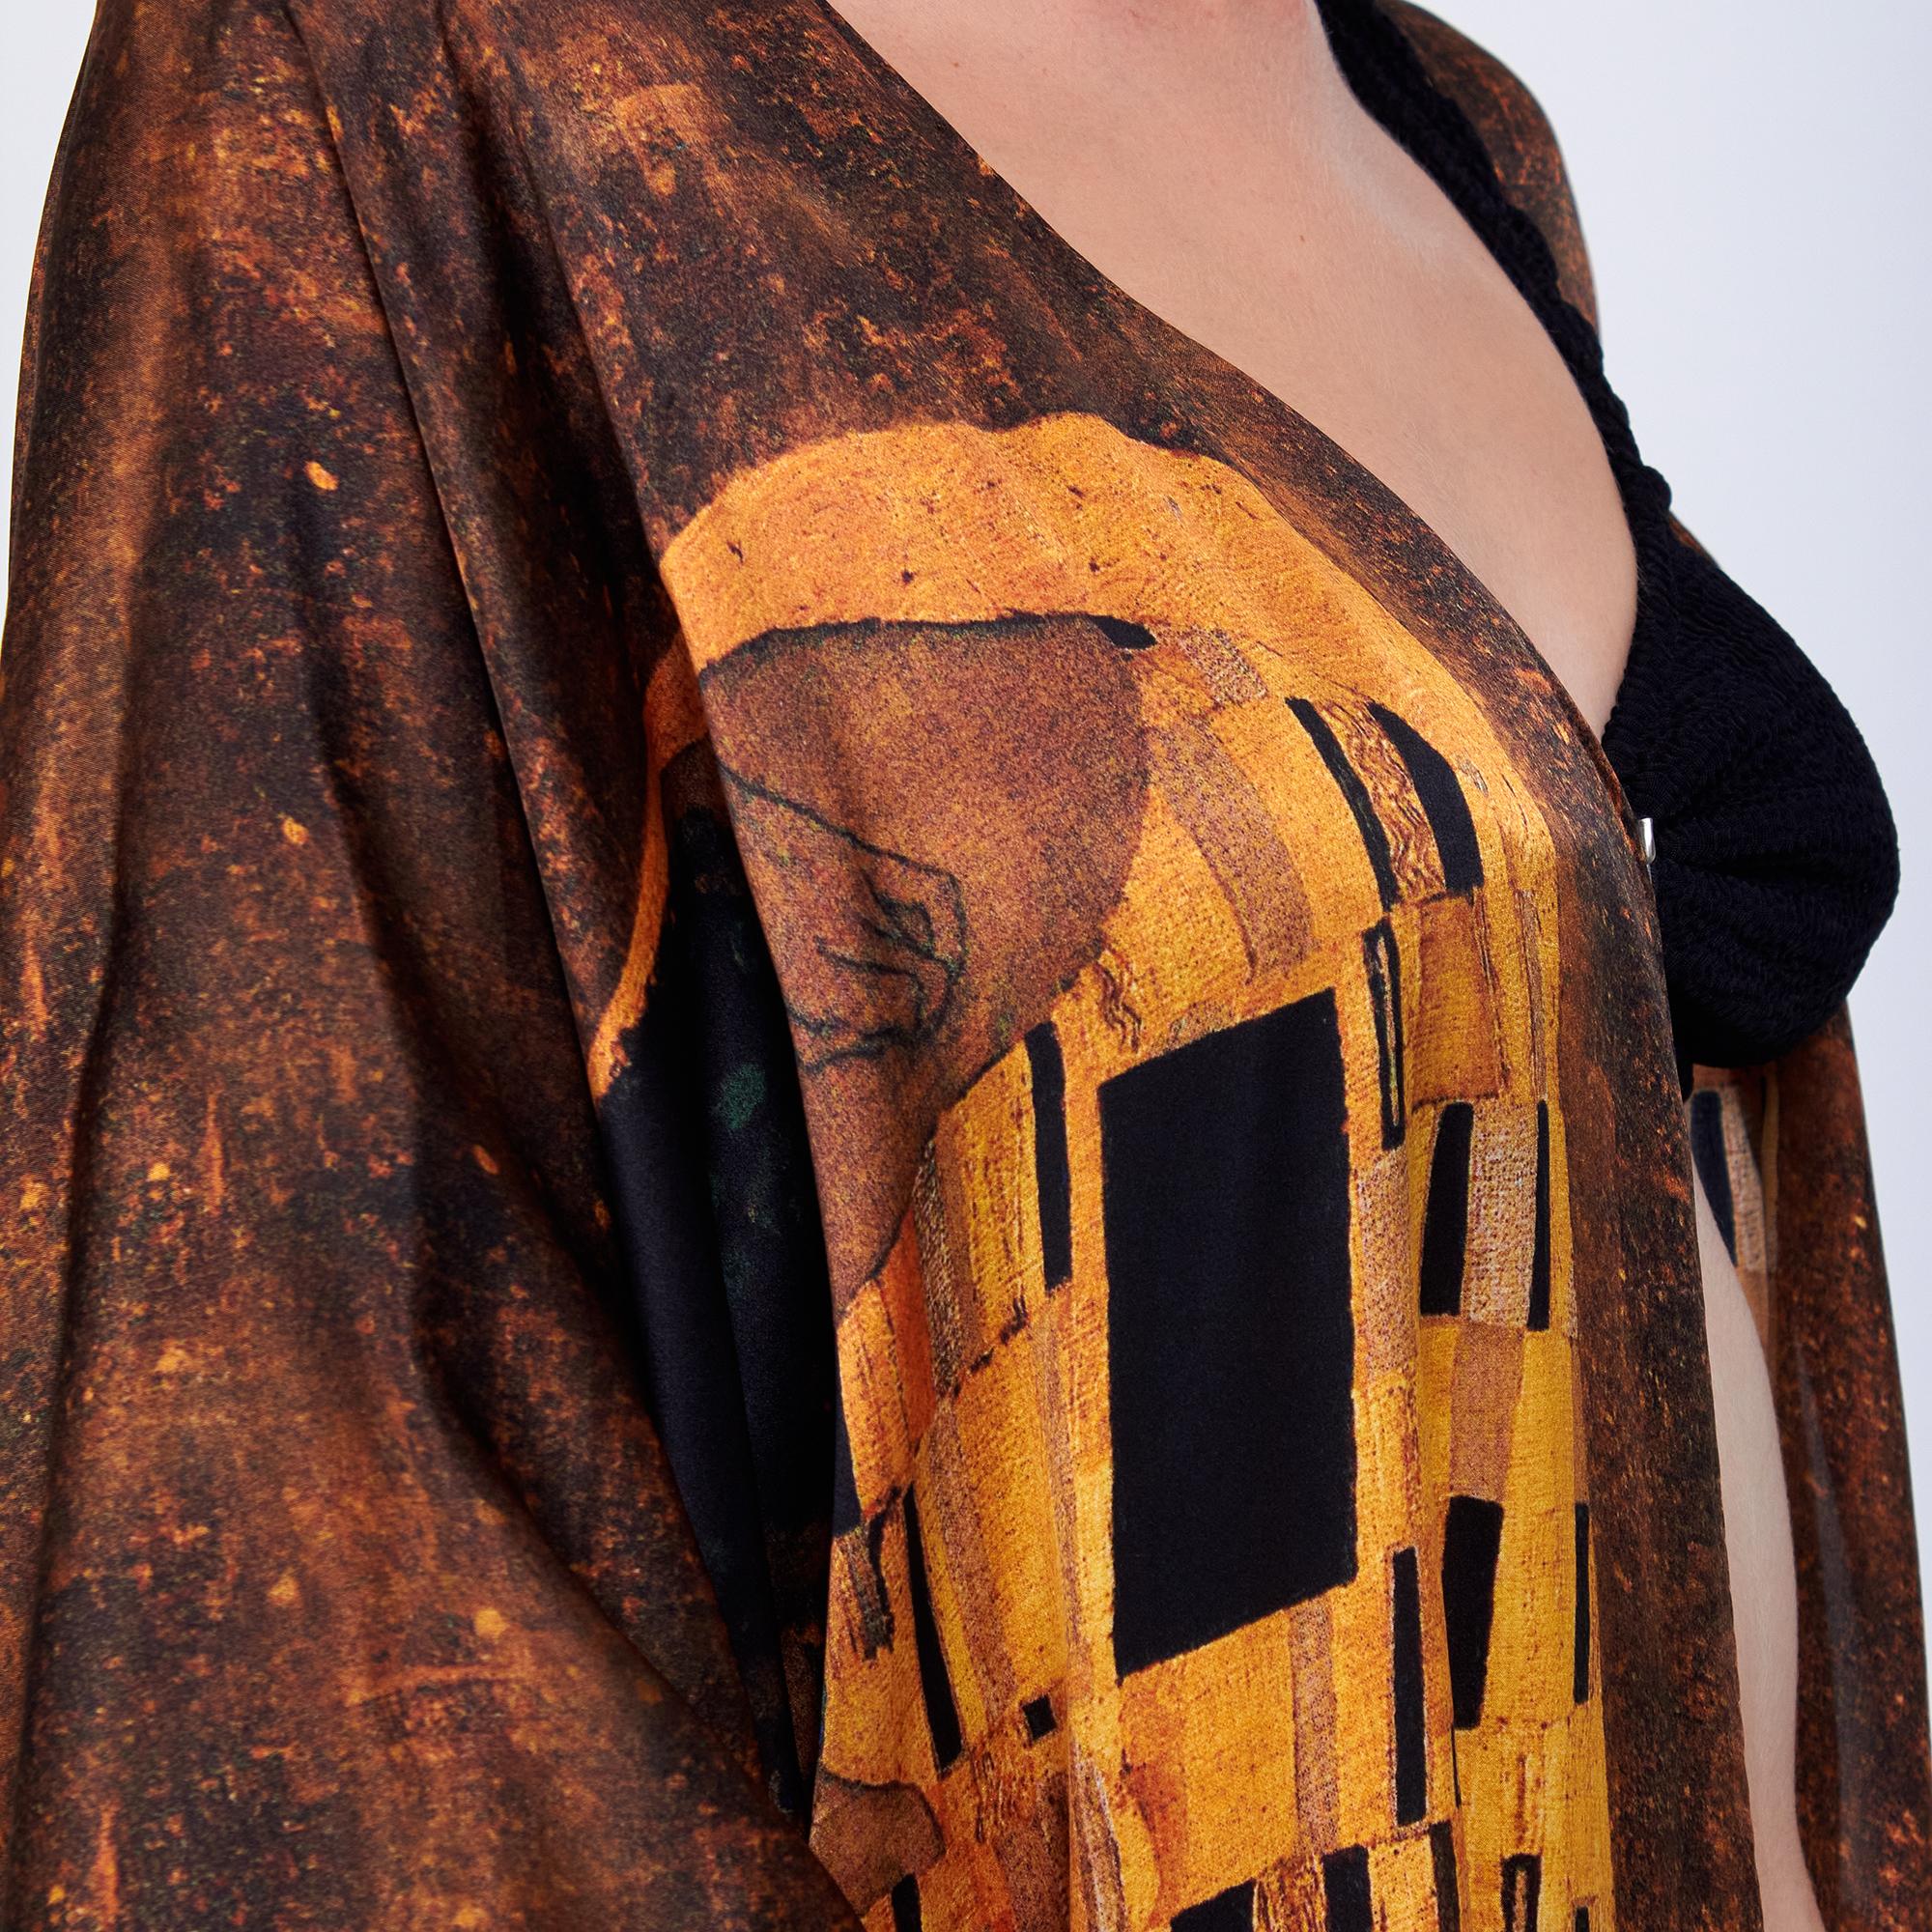 ألبسة كيمونو حريري ١٠٠٪؜ قصير "وشاح للشاطئ" | Gustav Klimt The Kiss